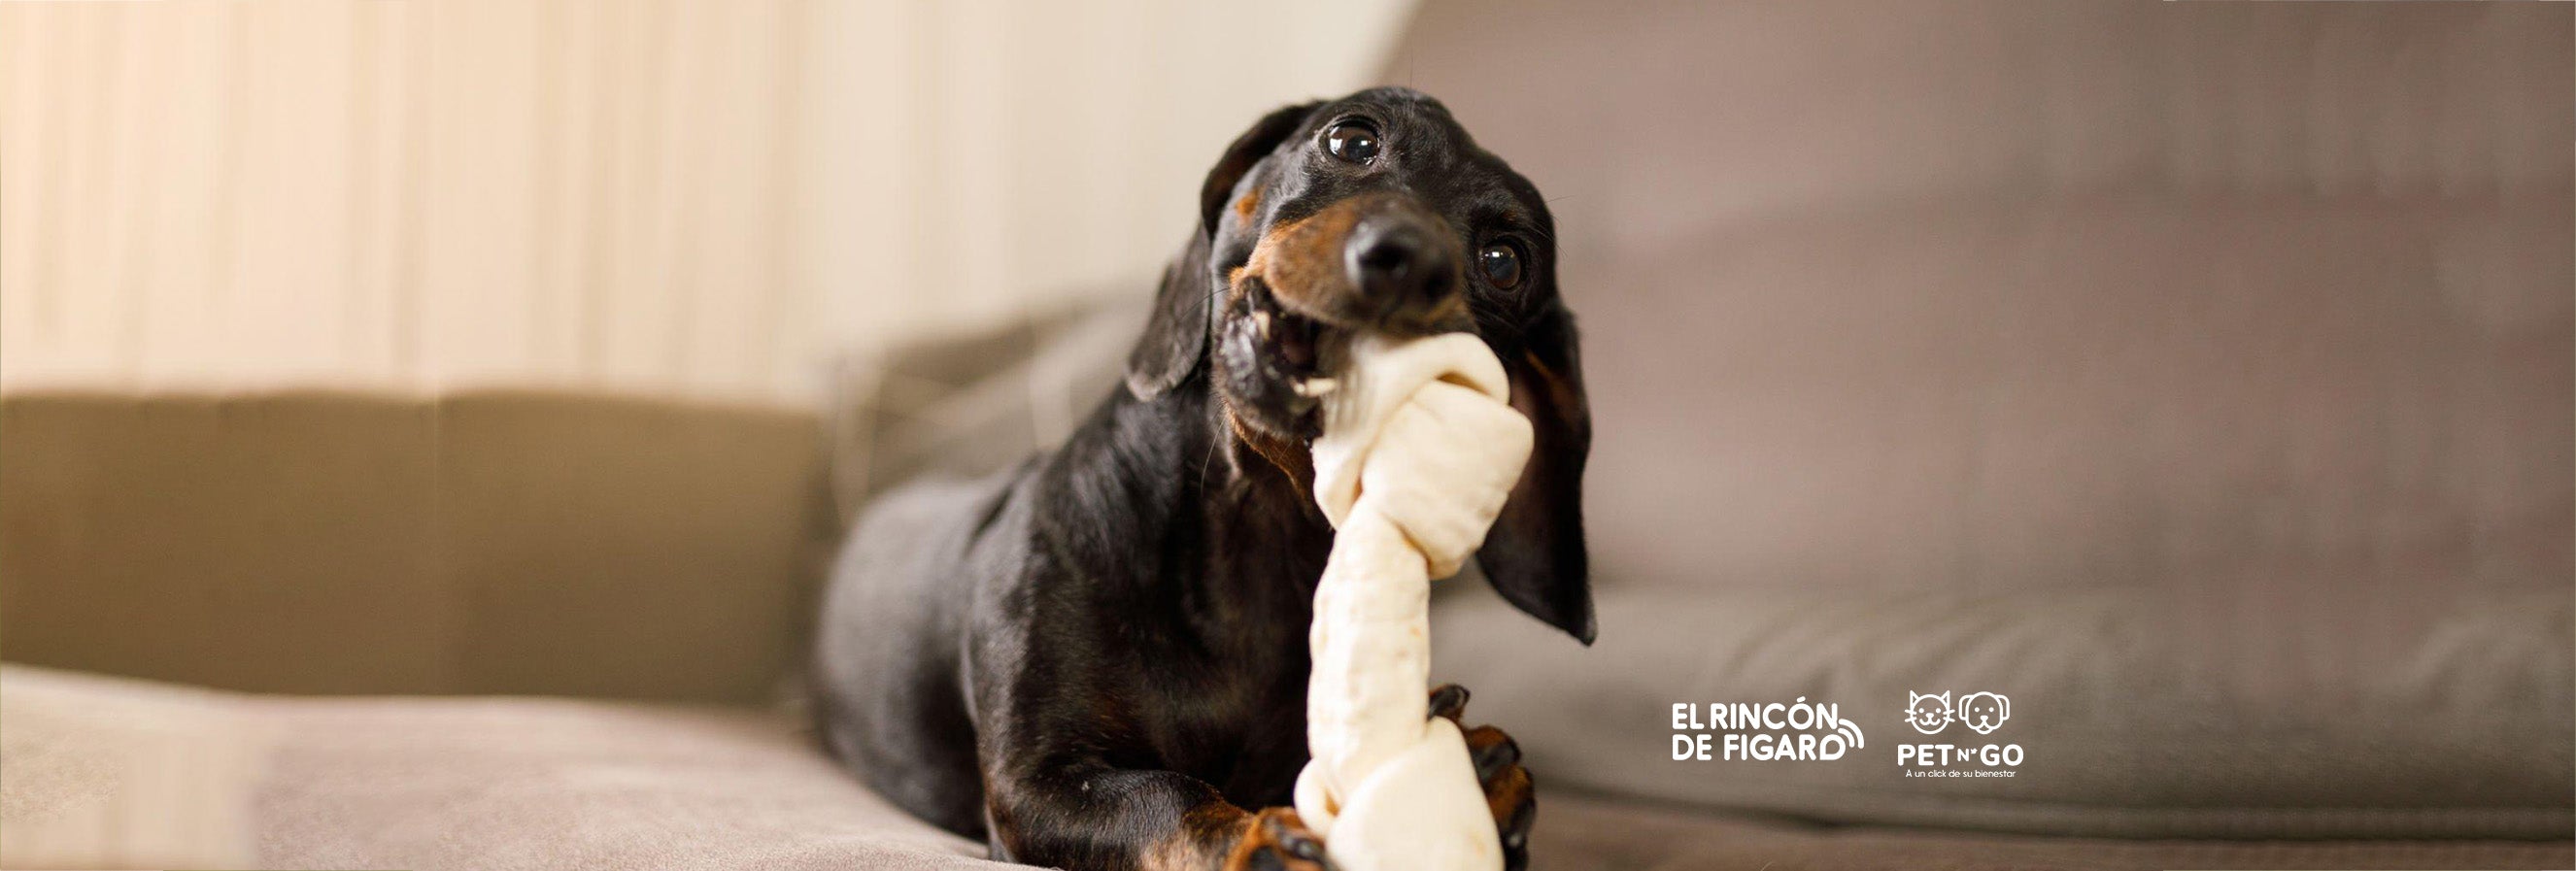 Juegos para perros en casa - Tienda Veterinaria Blog